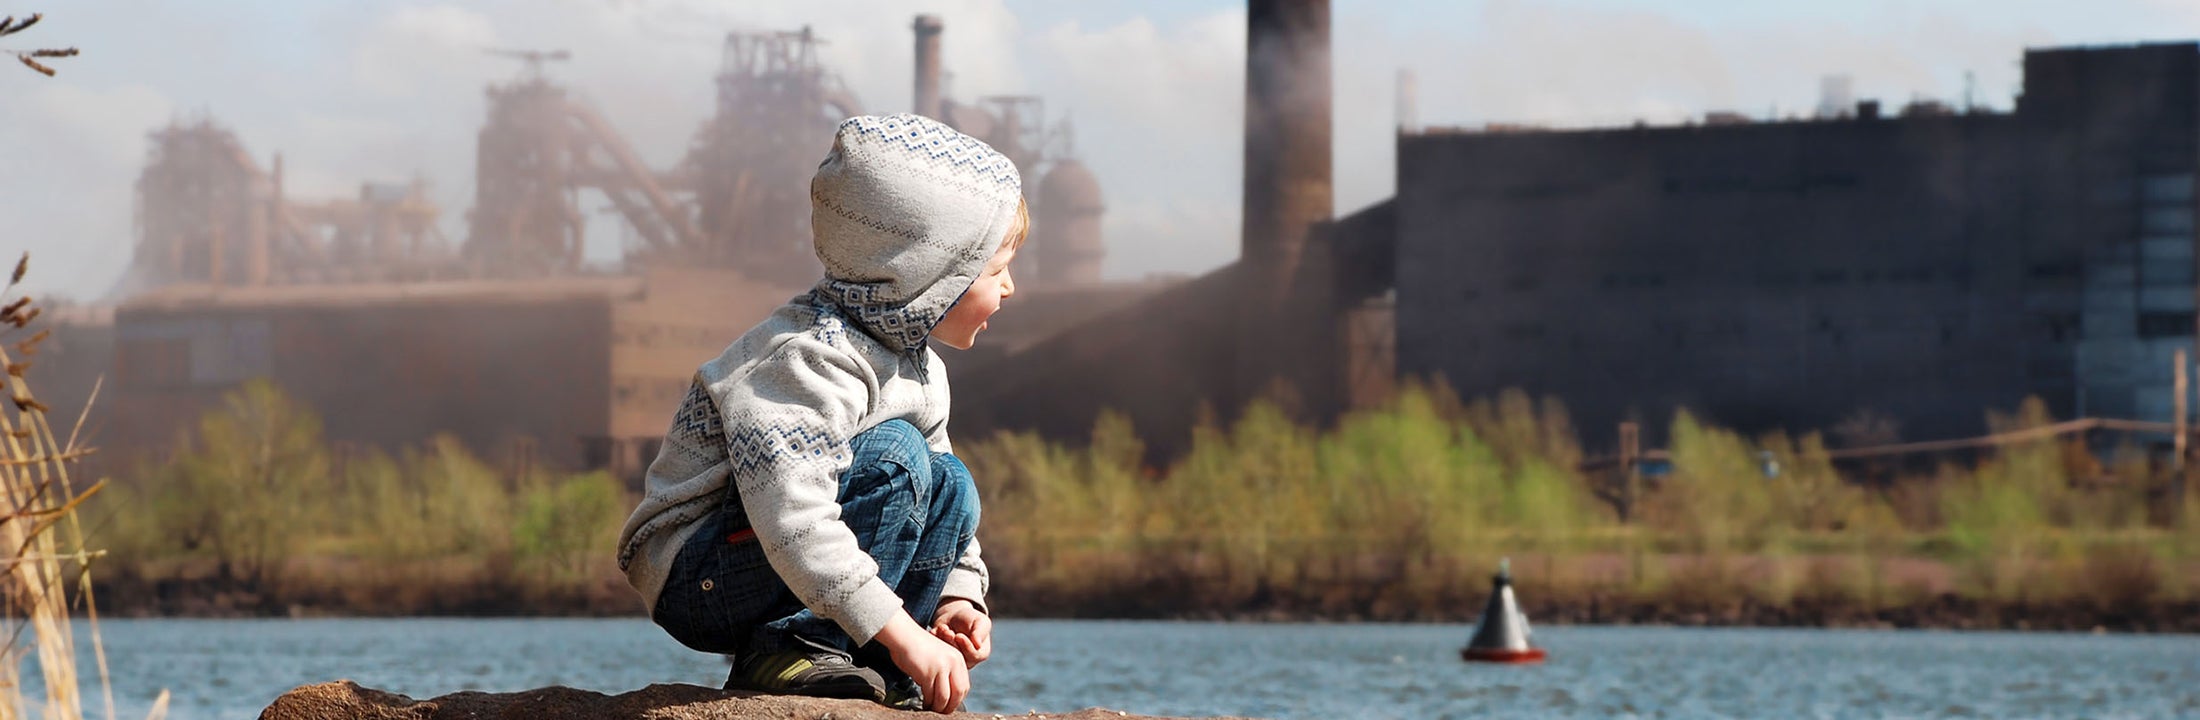 Kind zit naast een rivier vlakbij een fabriek